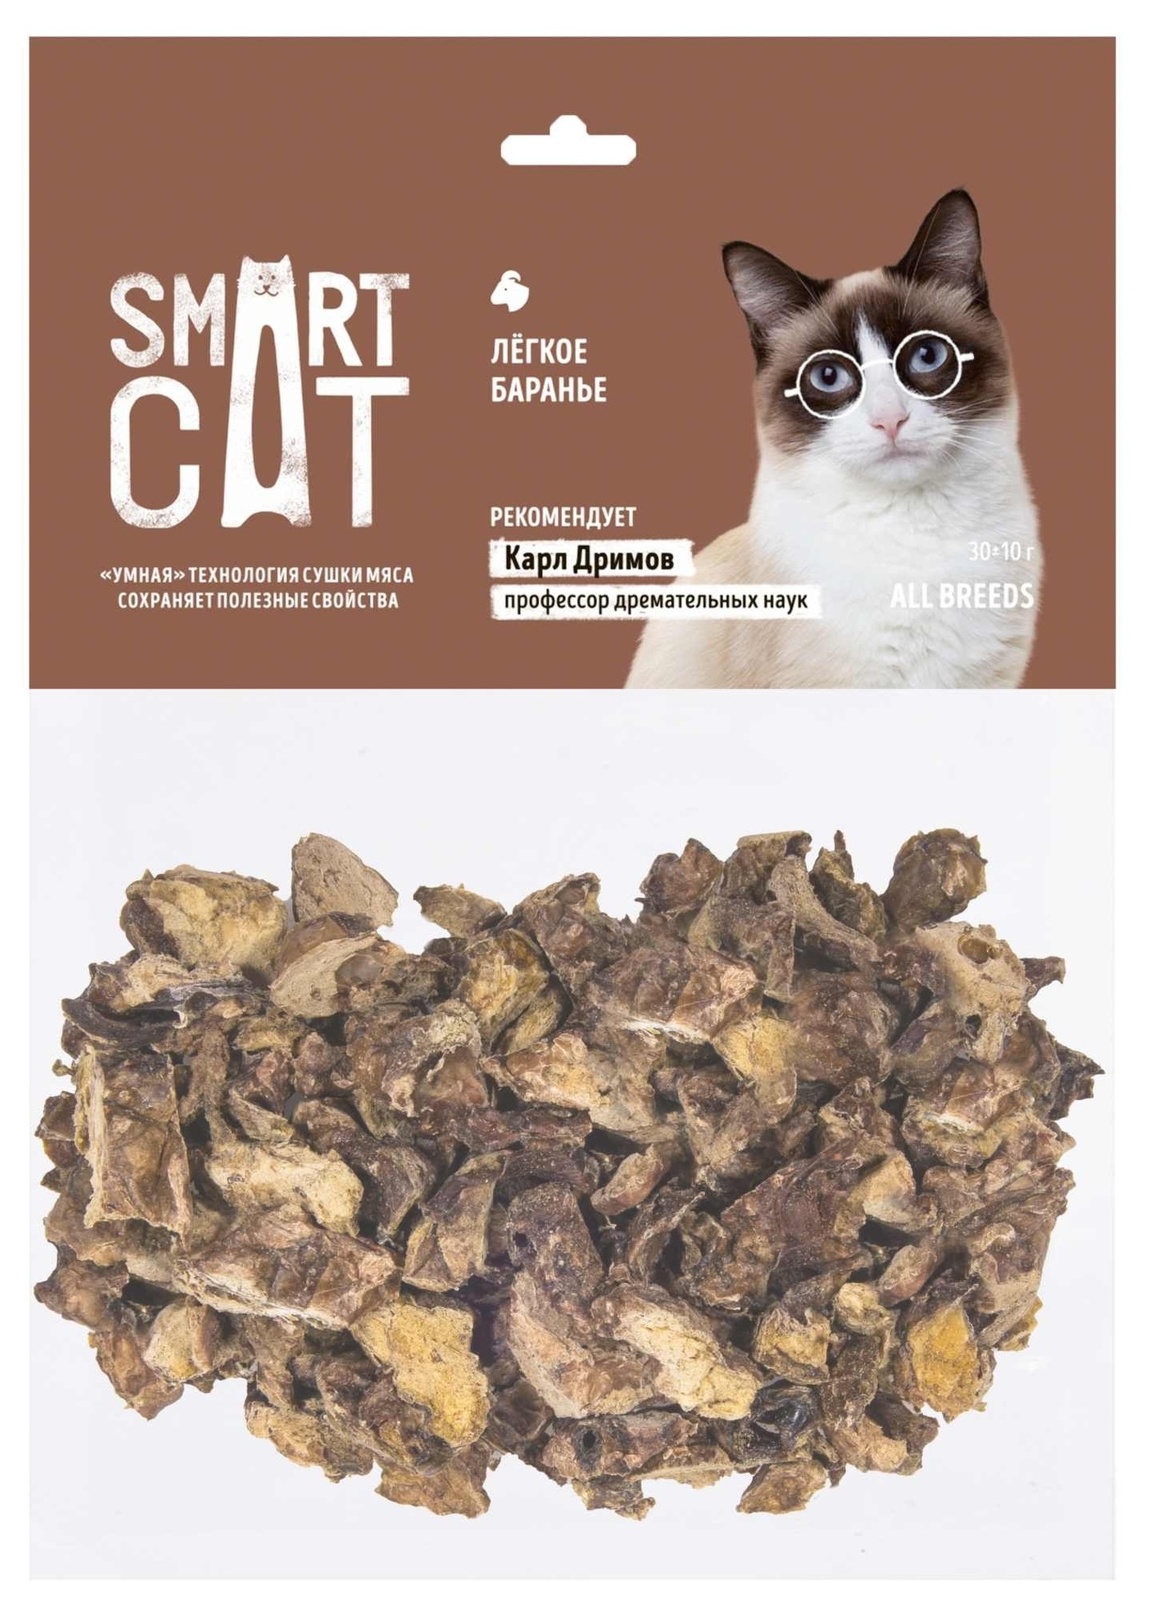 Smart Cat лакомства Smart Cat лакомства легкое баранье (30 г) smart cat лакомства smart cat лакомства лакомство для кошек нежное филе горбуши приготовленное на пару 25 г